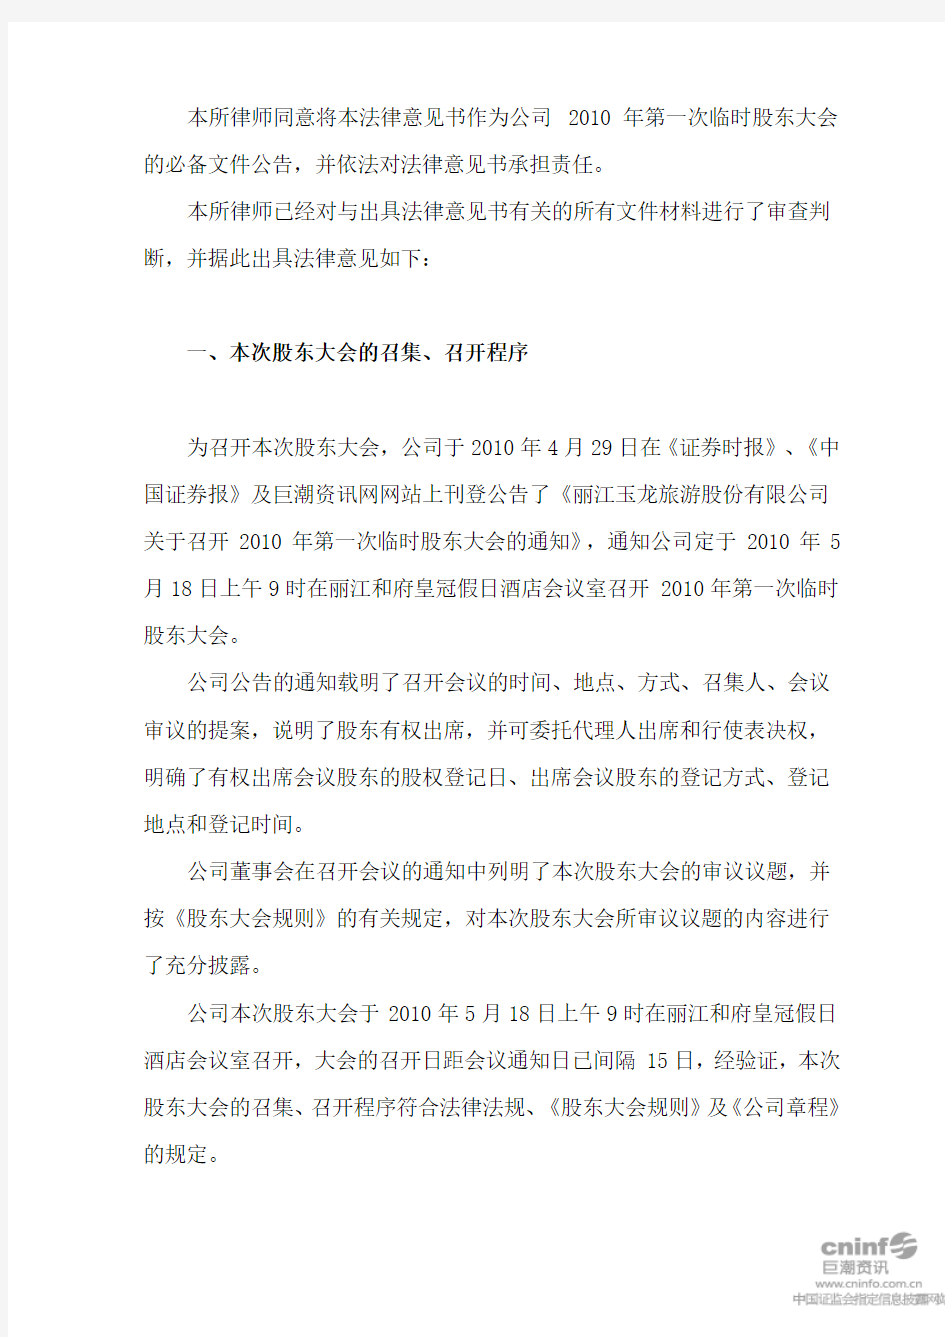 丽江旅游：2010年第一次临时股东大会的法律意见书 2010-05-19